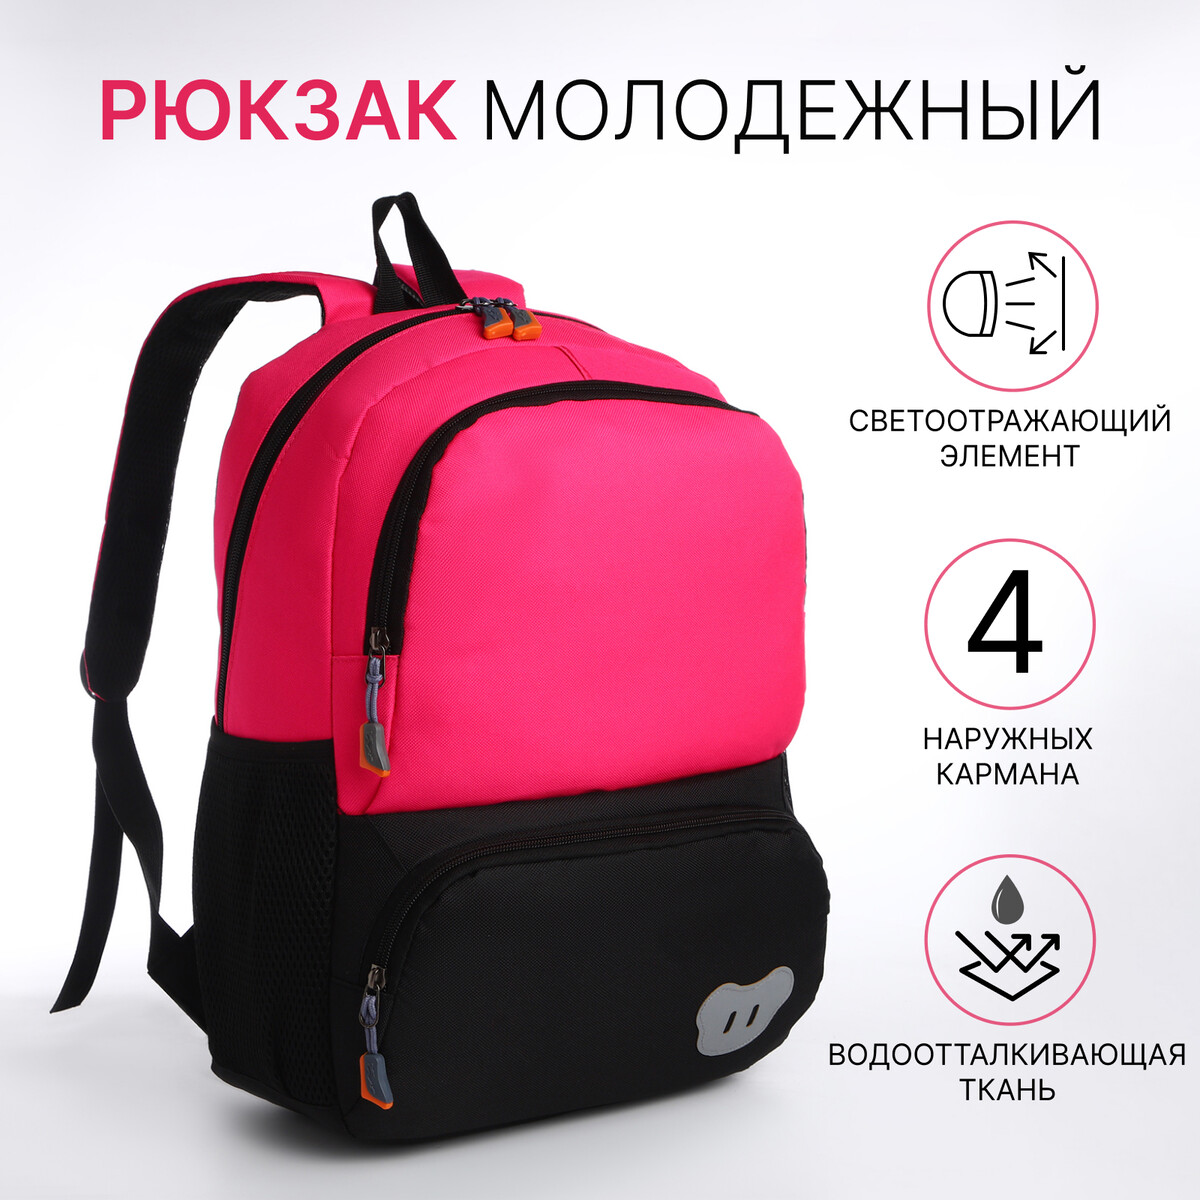 Рюкзак школьный, 2 отдела молнии, 3 кармана, цвет черный/розовый рюкзак молодежный из текстиля 2 отдела на молниях 3 кармана розовый